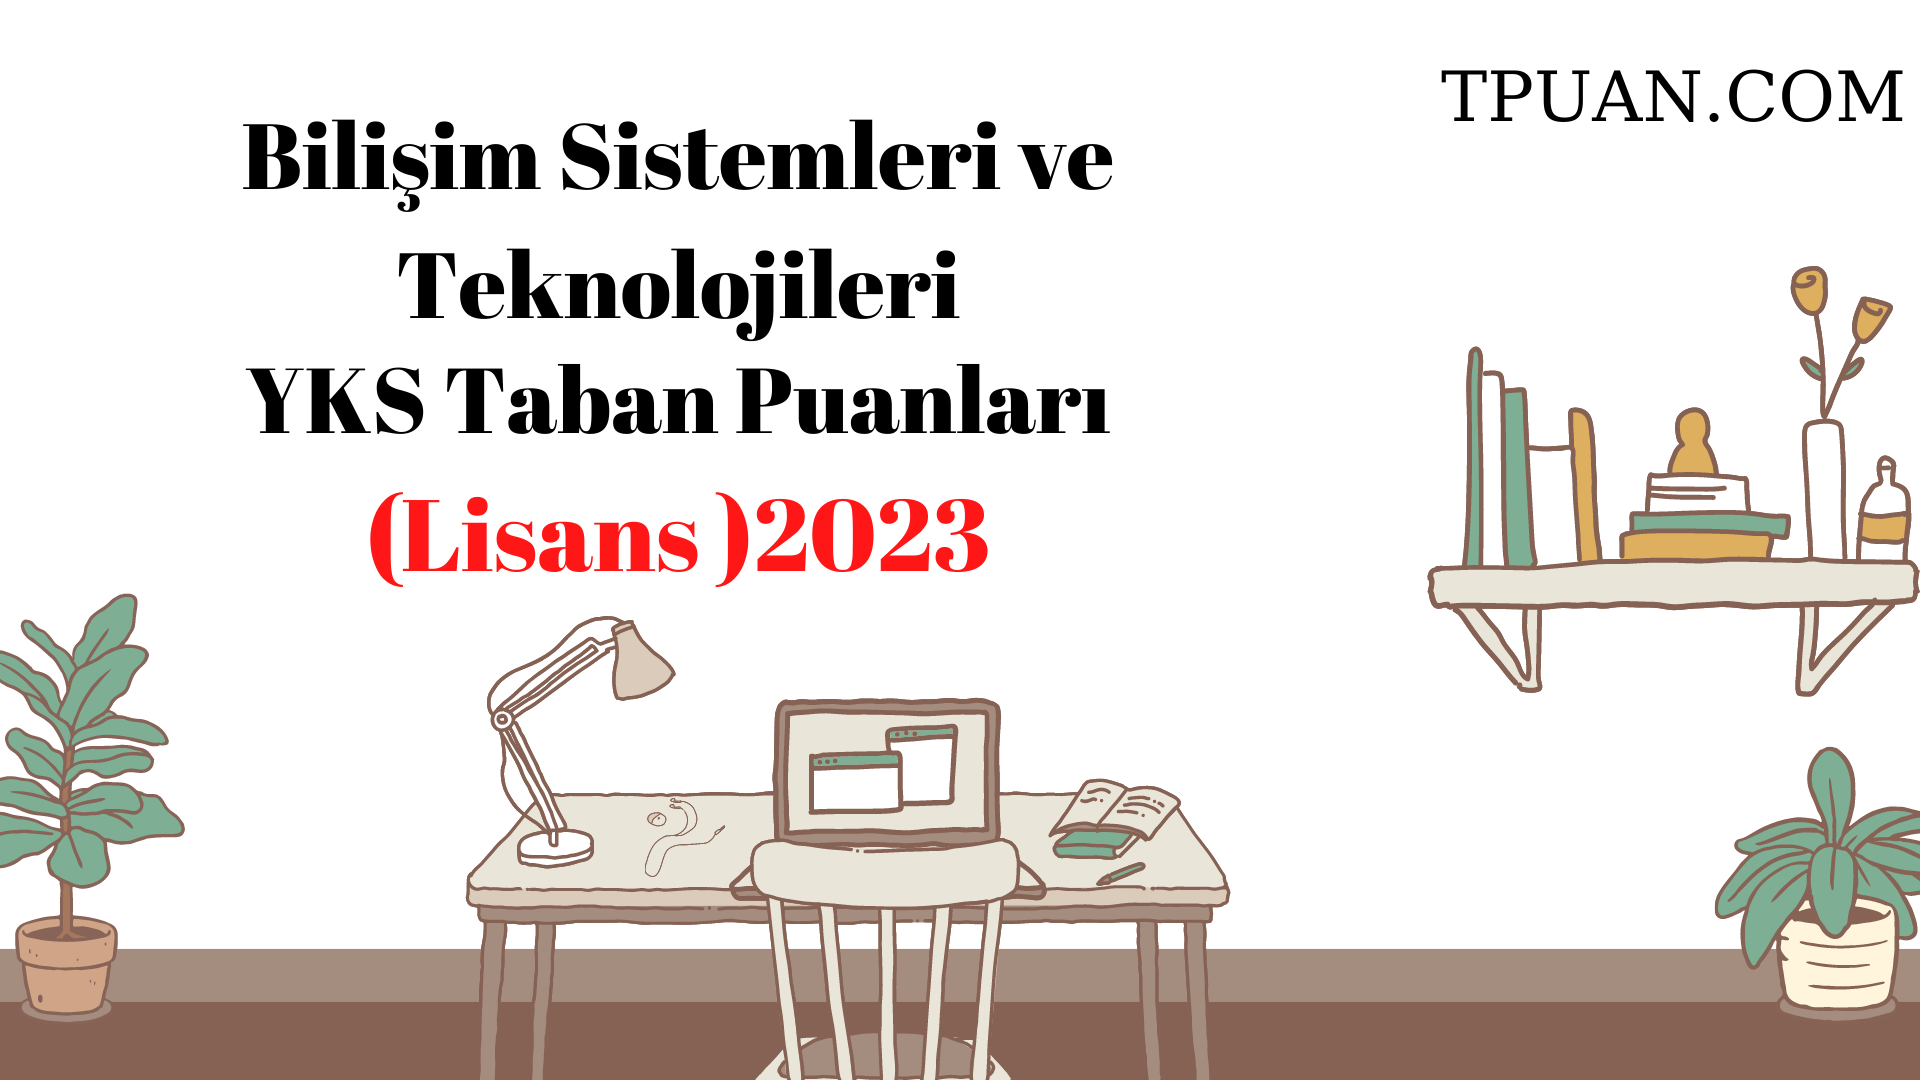  Bilişim Sistemleri ve Teknolojileri Bölümü YKS Taban Puanları (4 Yıllık) 2023